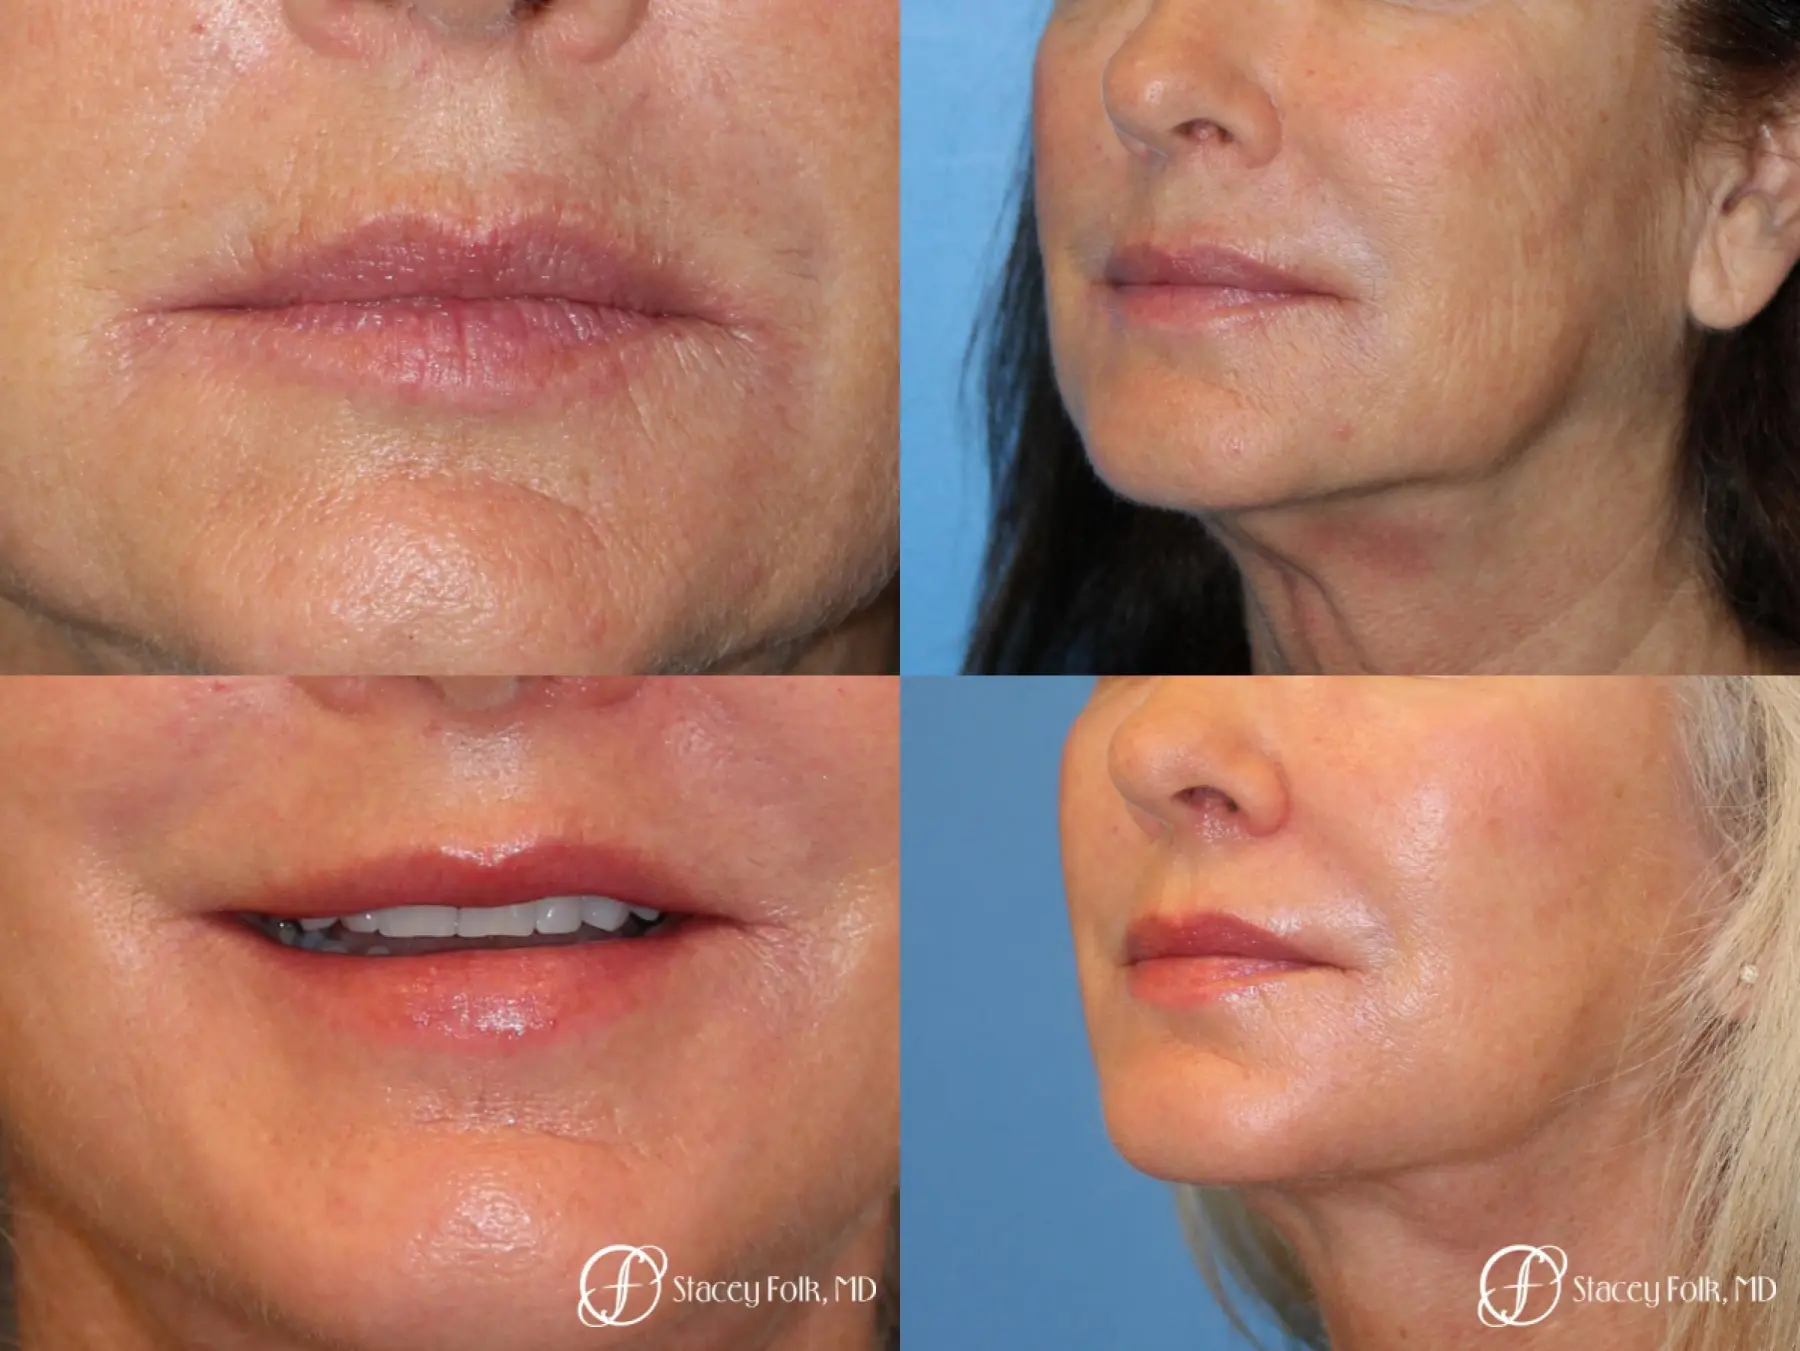 Denver Laser Skin Resurfacing Face 9390 - Before and After 1